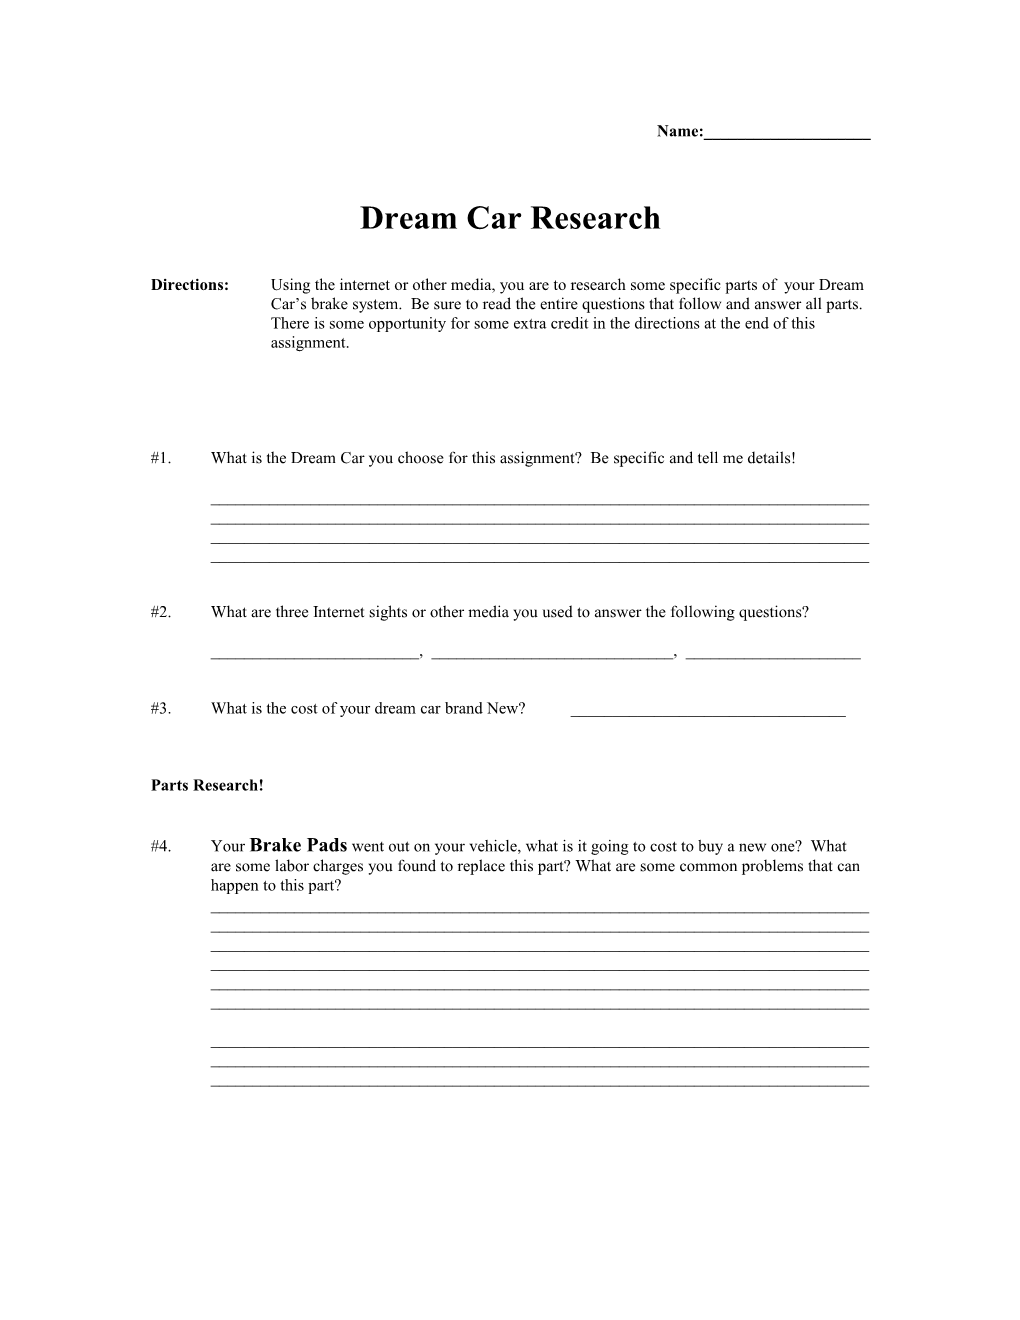 Dream Car Research